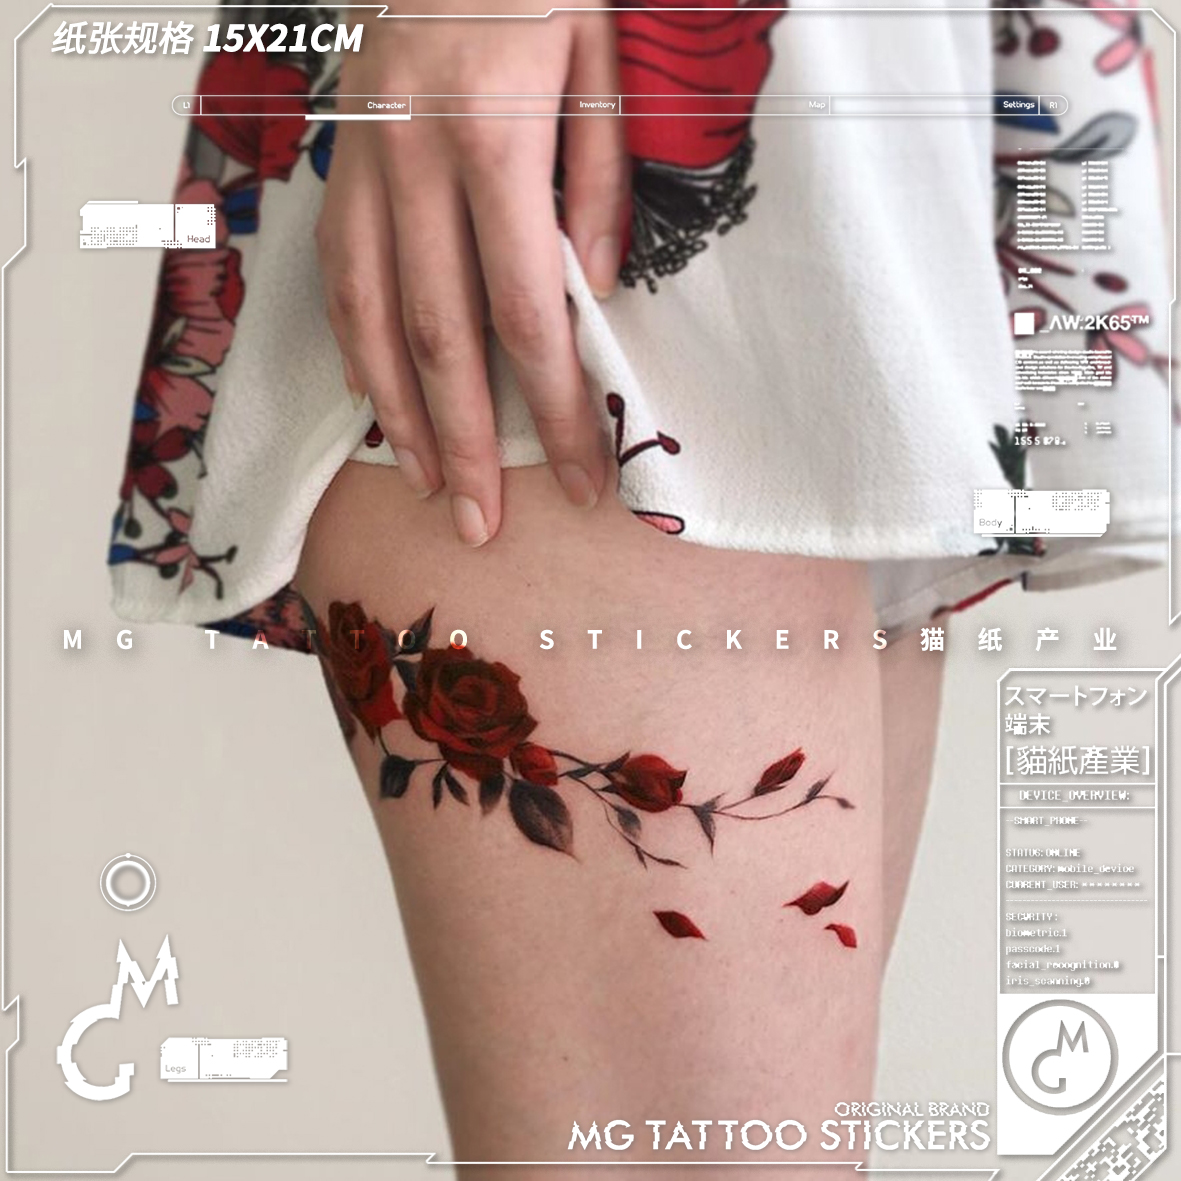 MG tattoo 红色玫瑰植物花朵少女纹身贴唯美性感腿环腿部脚踝纹身